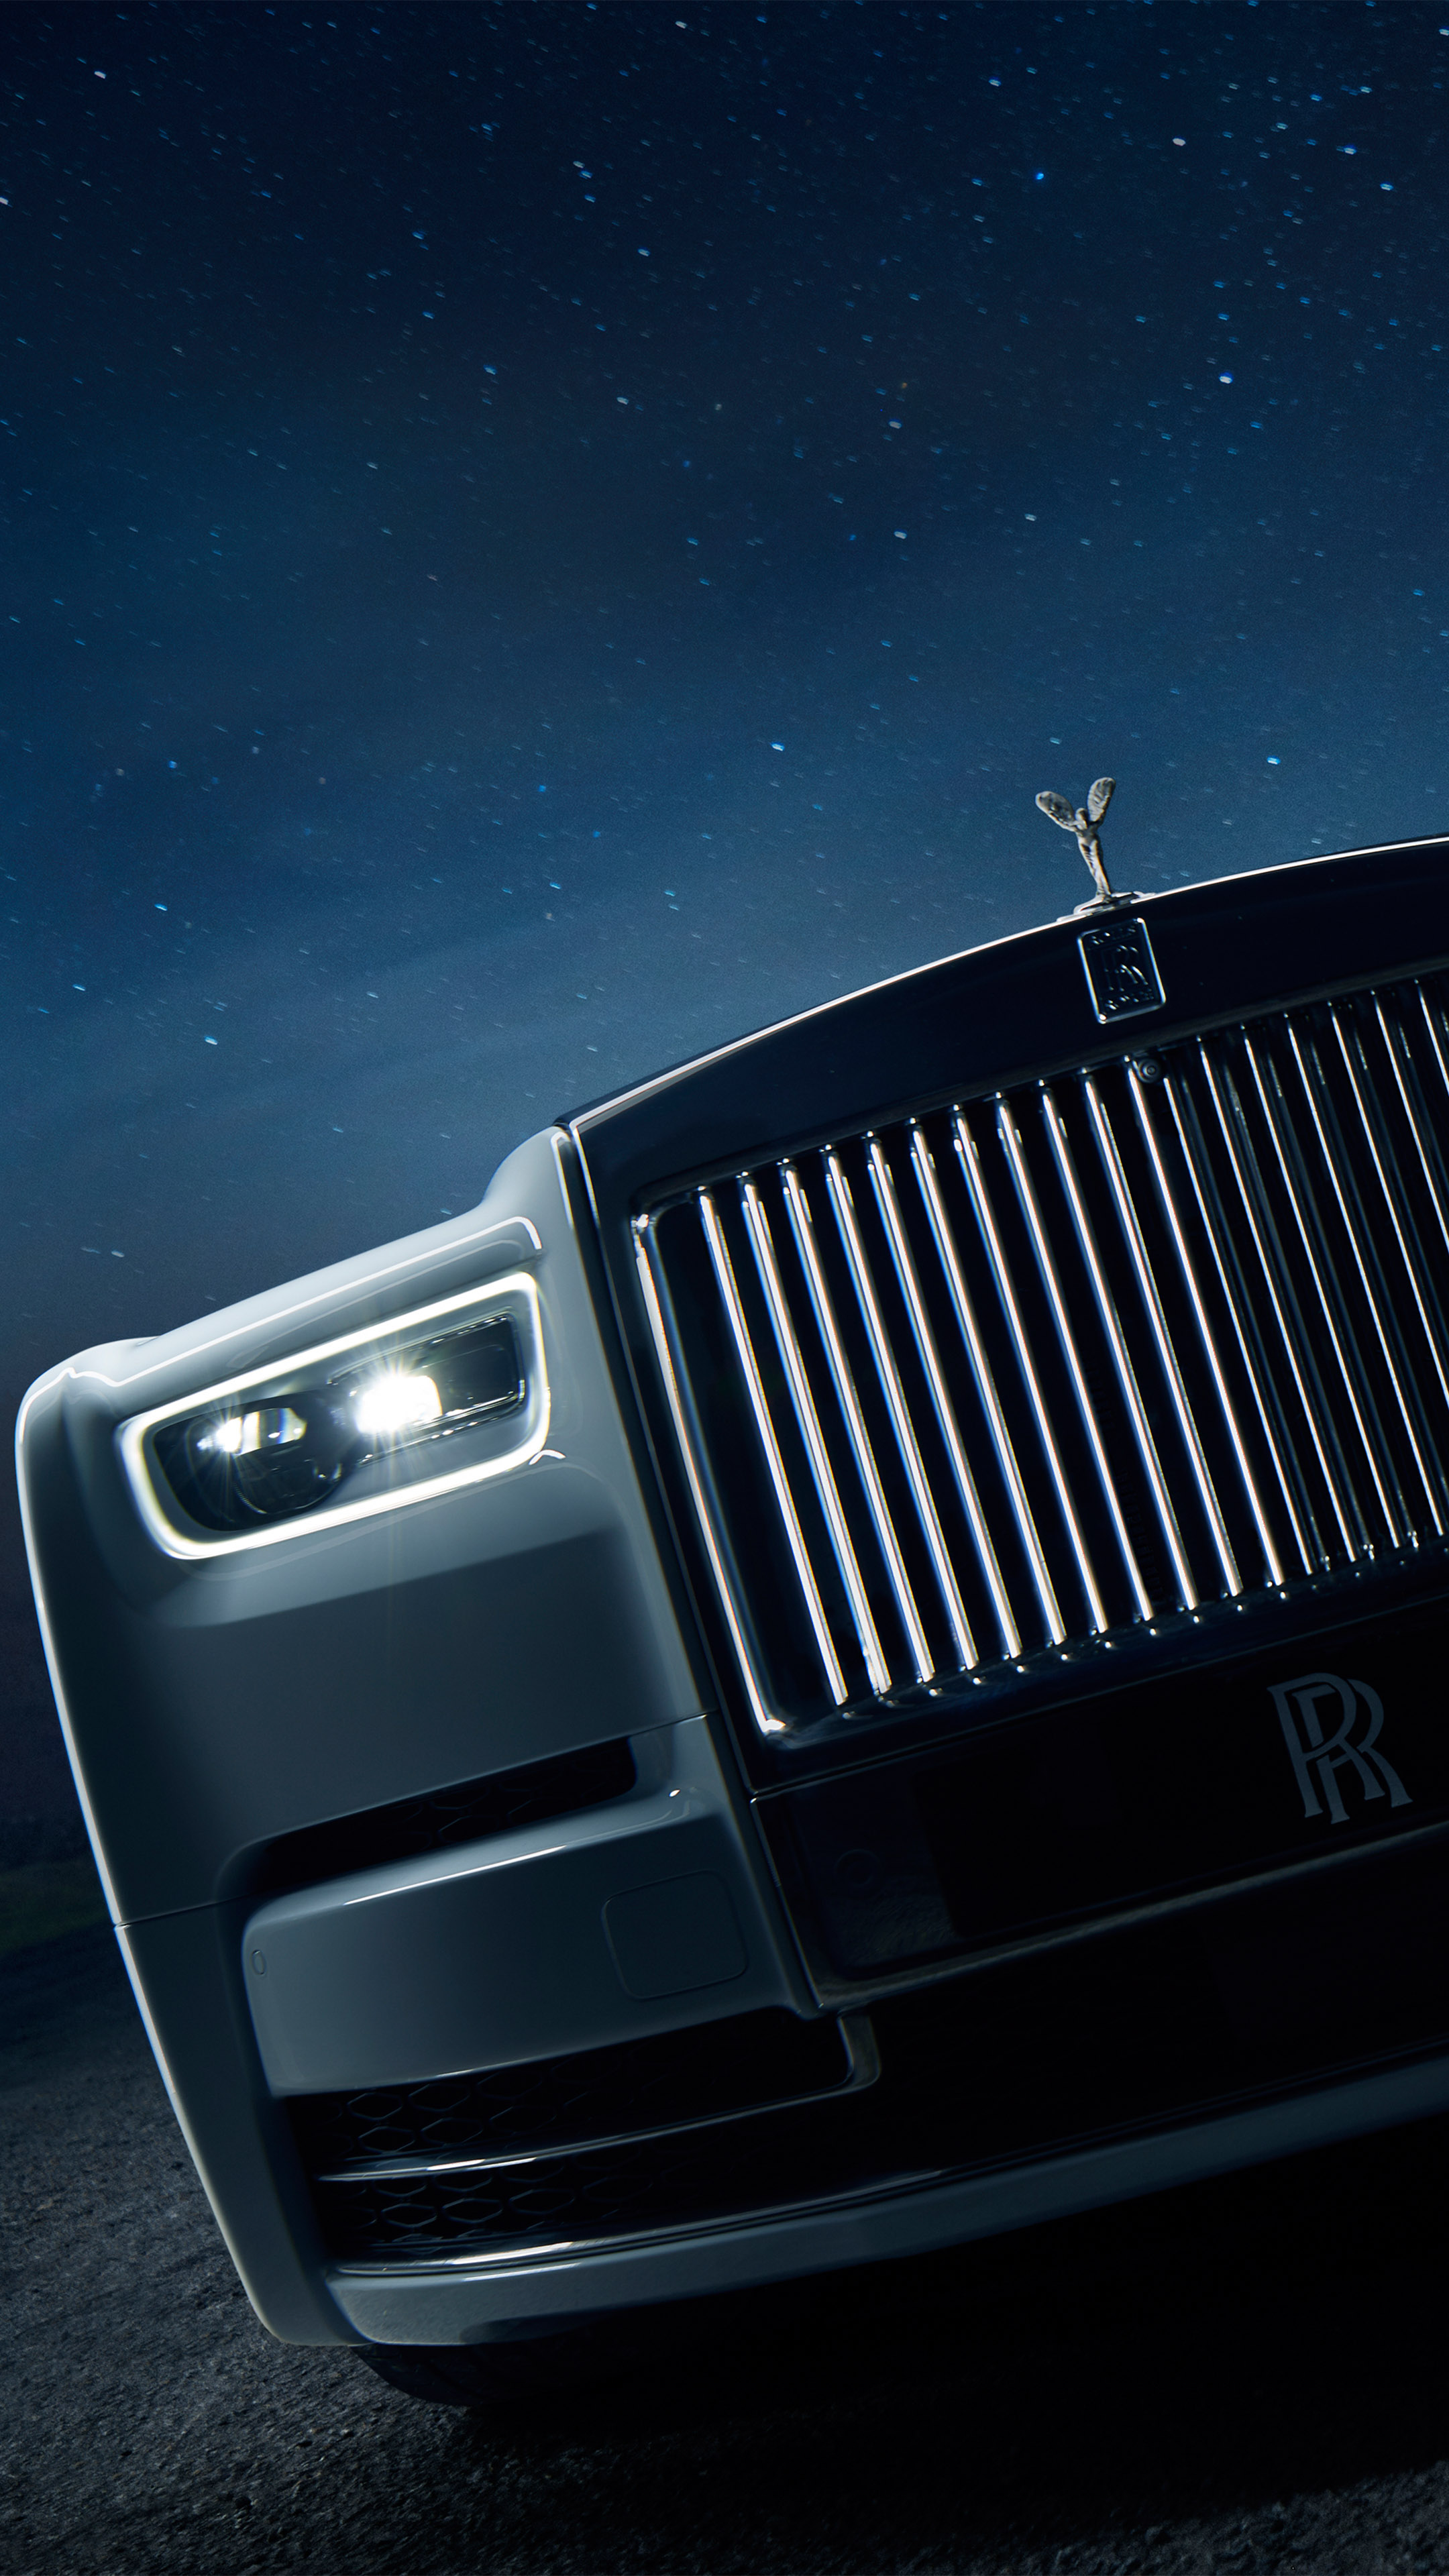 Rolls Royce Hd Wallpaper , HD Wallpaper & Backgrounds